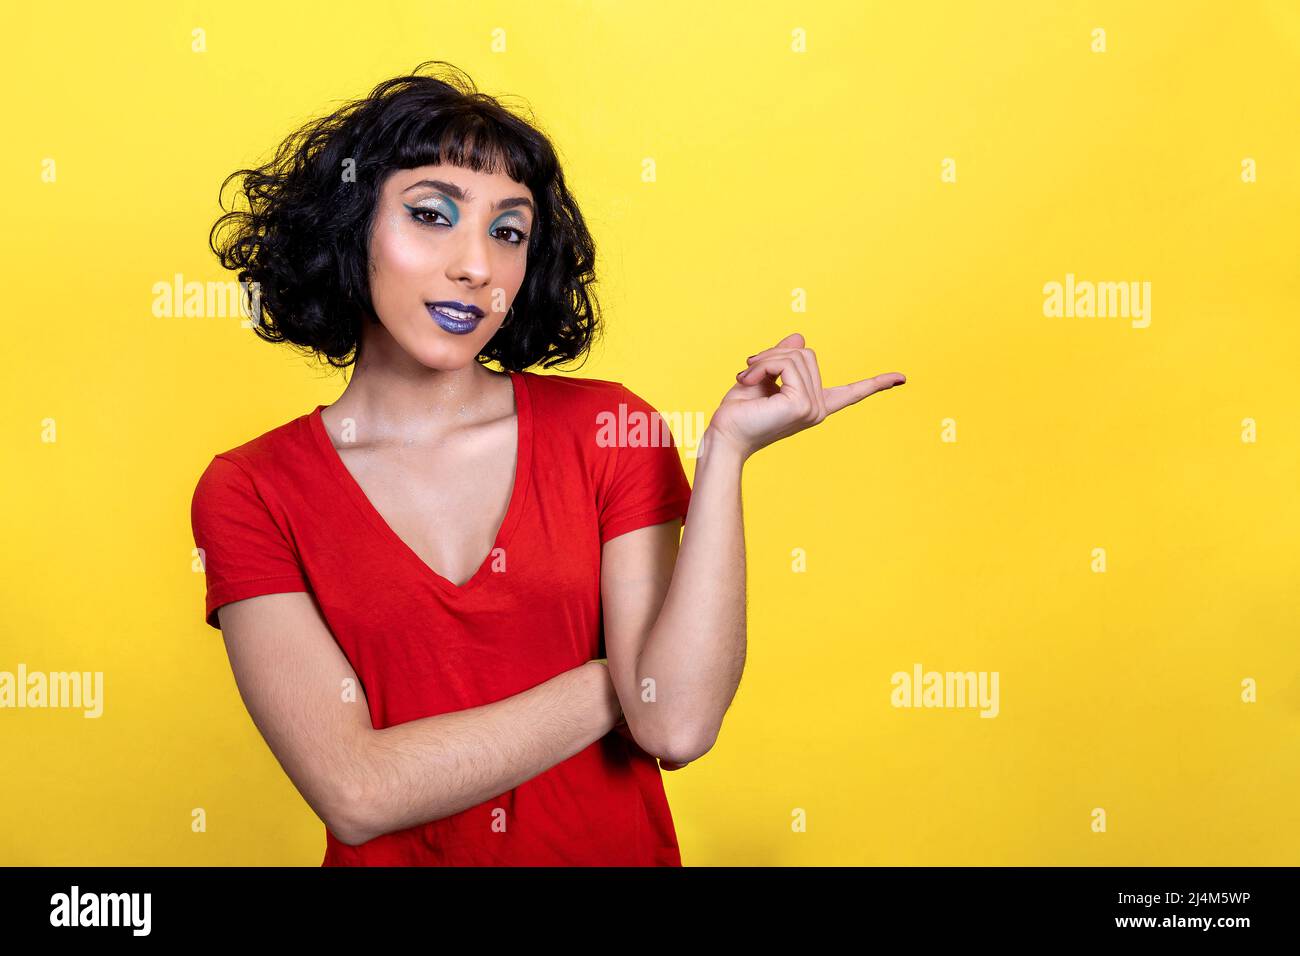 La giovane donna sorridente in t-shirt rossa punta con il dito. Ritratto donna con look alla moda e colori brillanti su sfondo giallo. Foto Stock